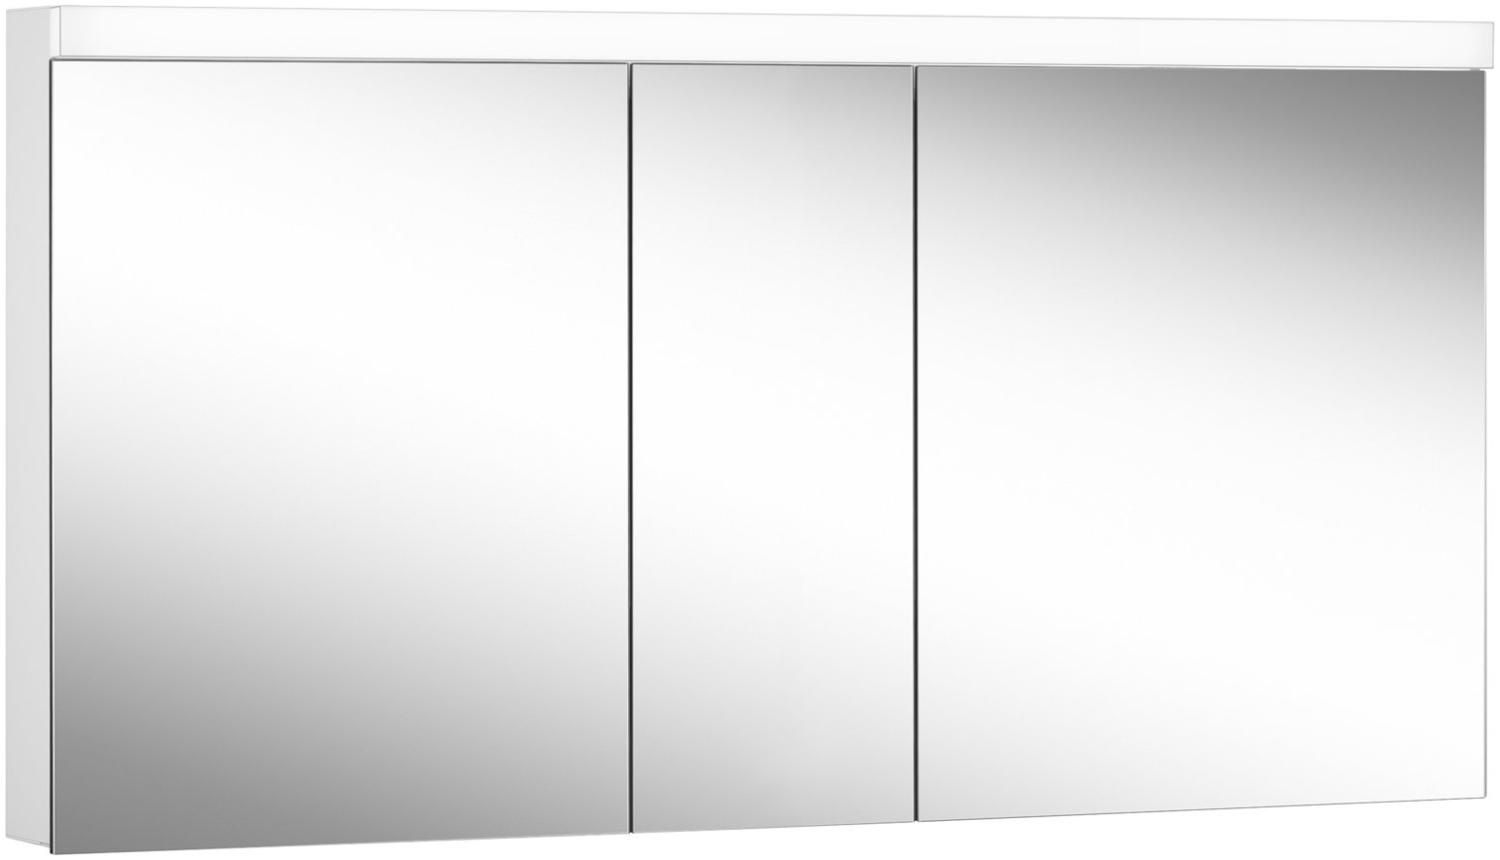 Schneider DAILY Line Ultimate LED Lichtspiegelschrank, 3 Doppelspiegeltüren, 150x74,8x13cm, 178. 150. 02. 02, Ausführung: EU-Norm/Korpus weiss - 178. 150. 02. 02 Bild 1